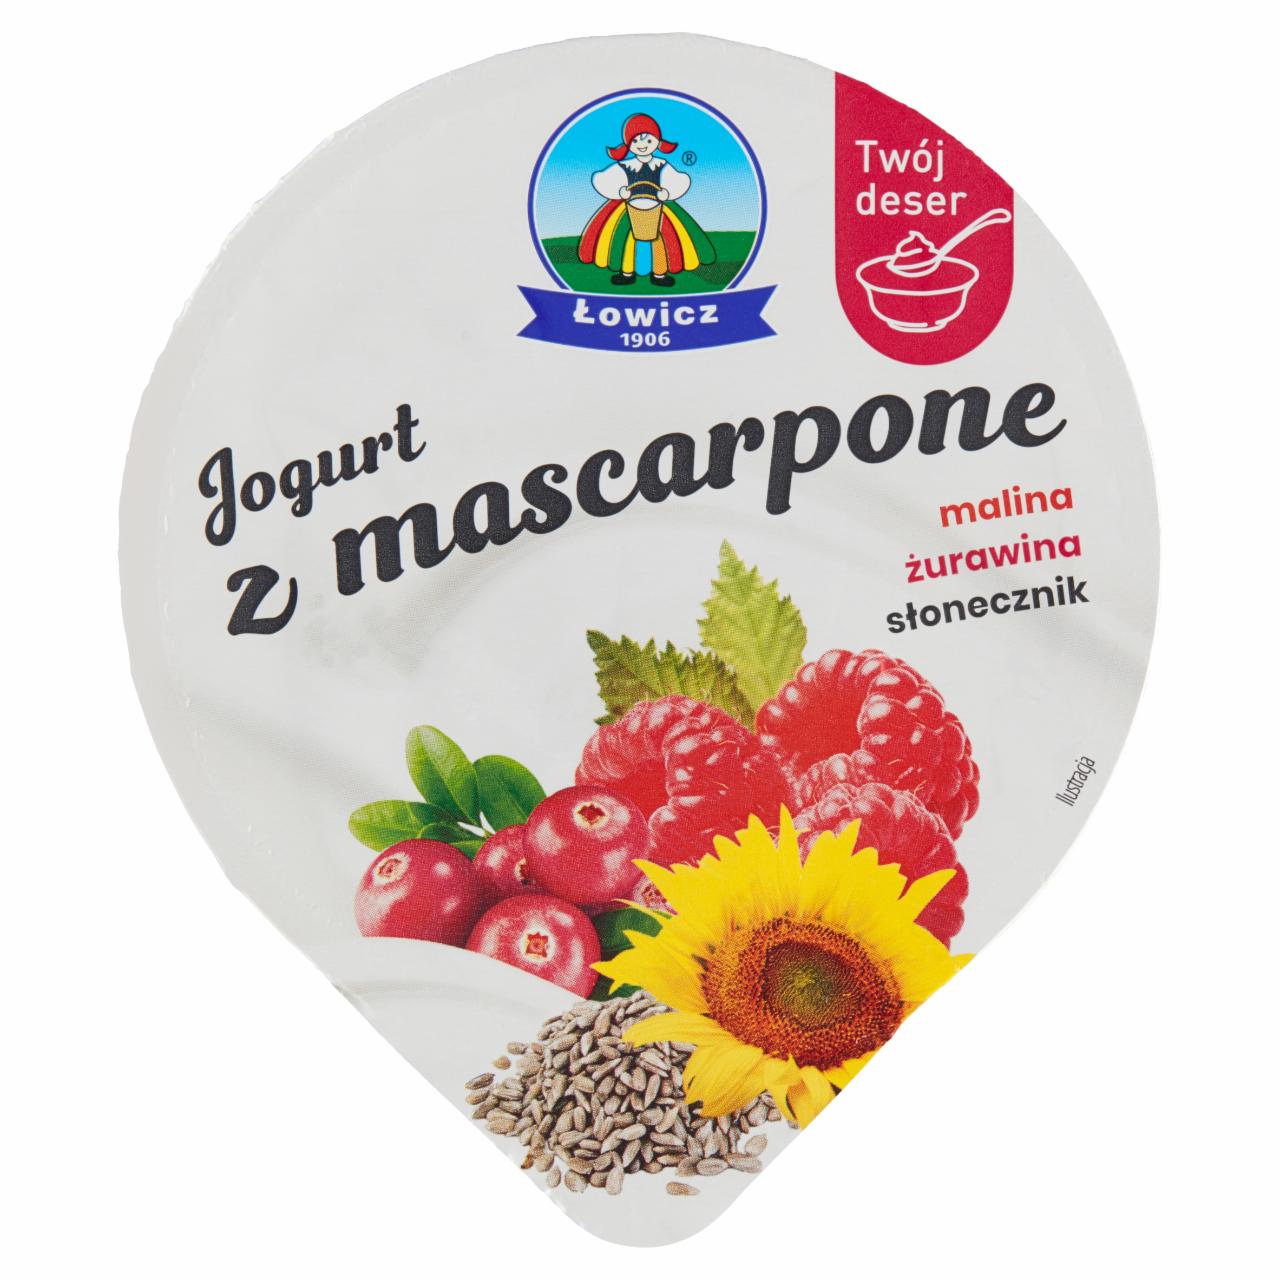 Zdjęcia - Łowicz Jogurt z mascarpone malina żurawina słonecznik 130 g